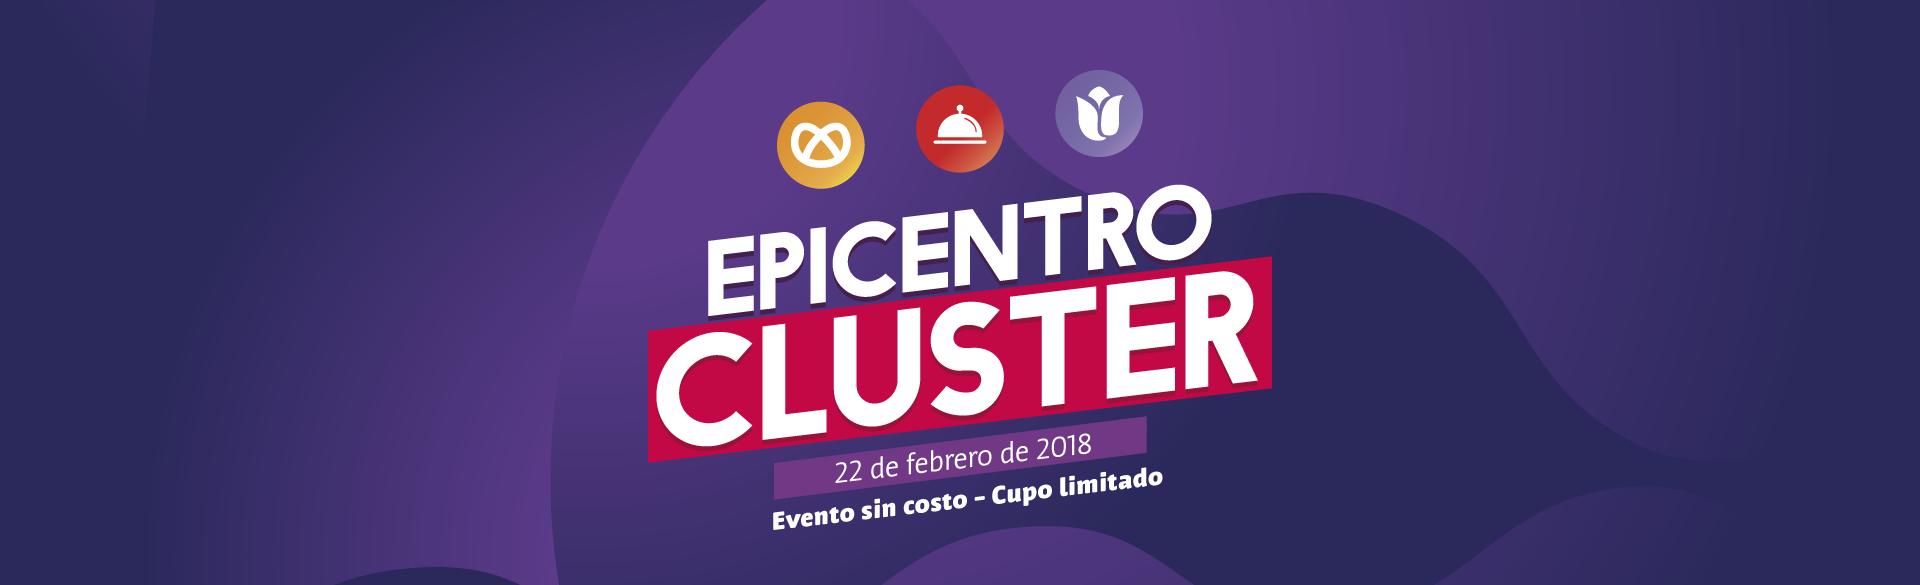 Epicentro Cluster 22 de febrero 2018